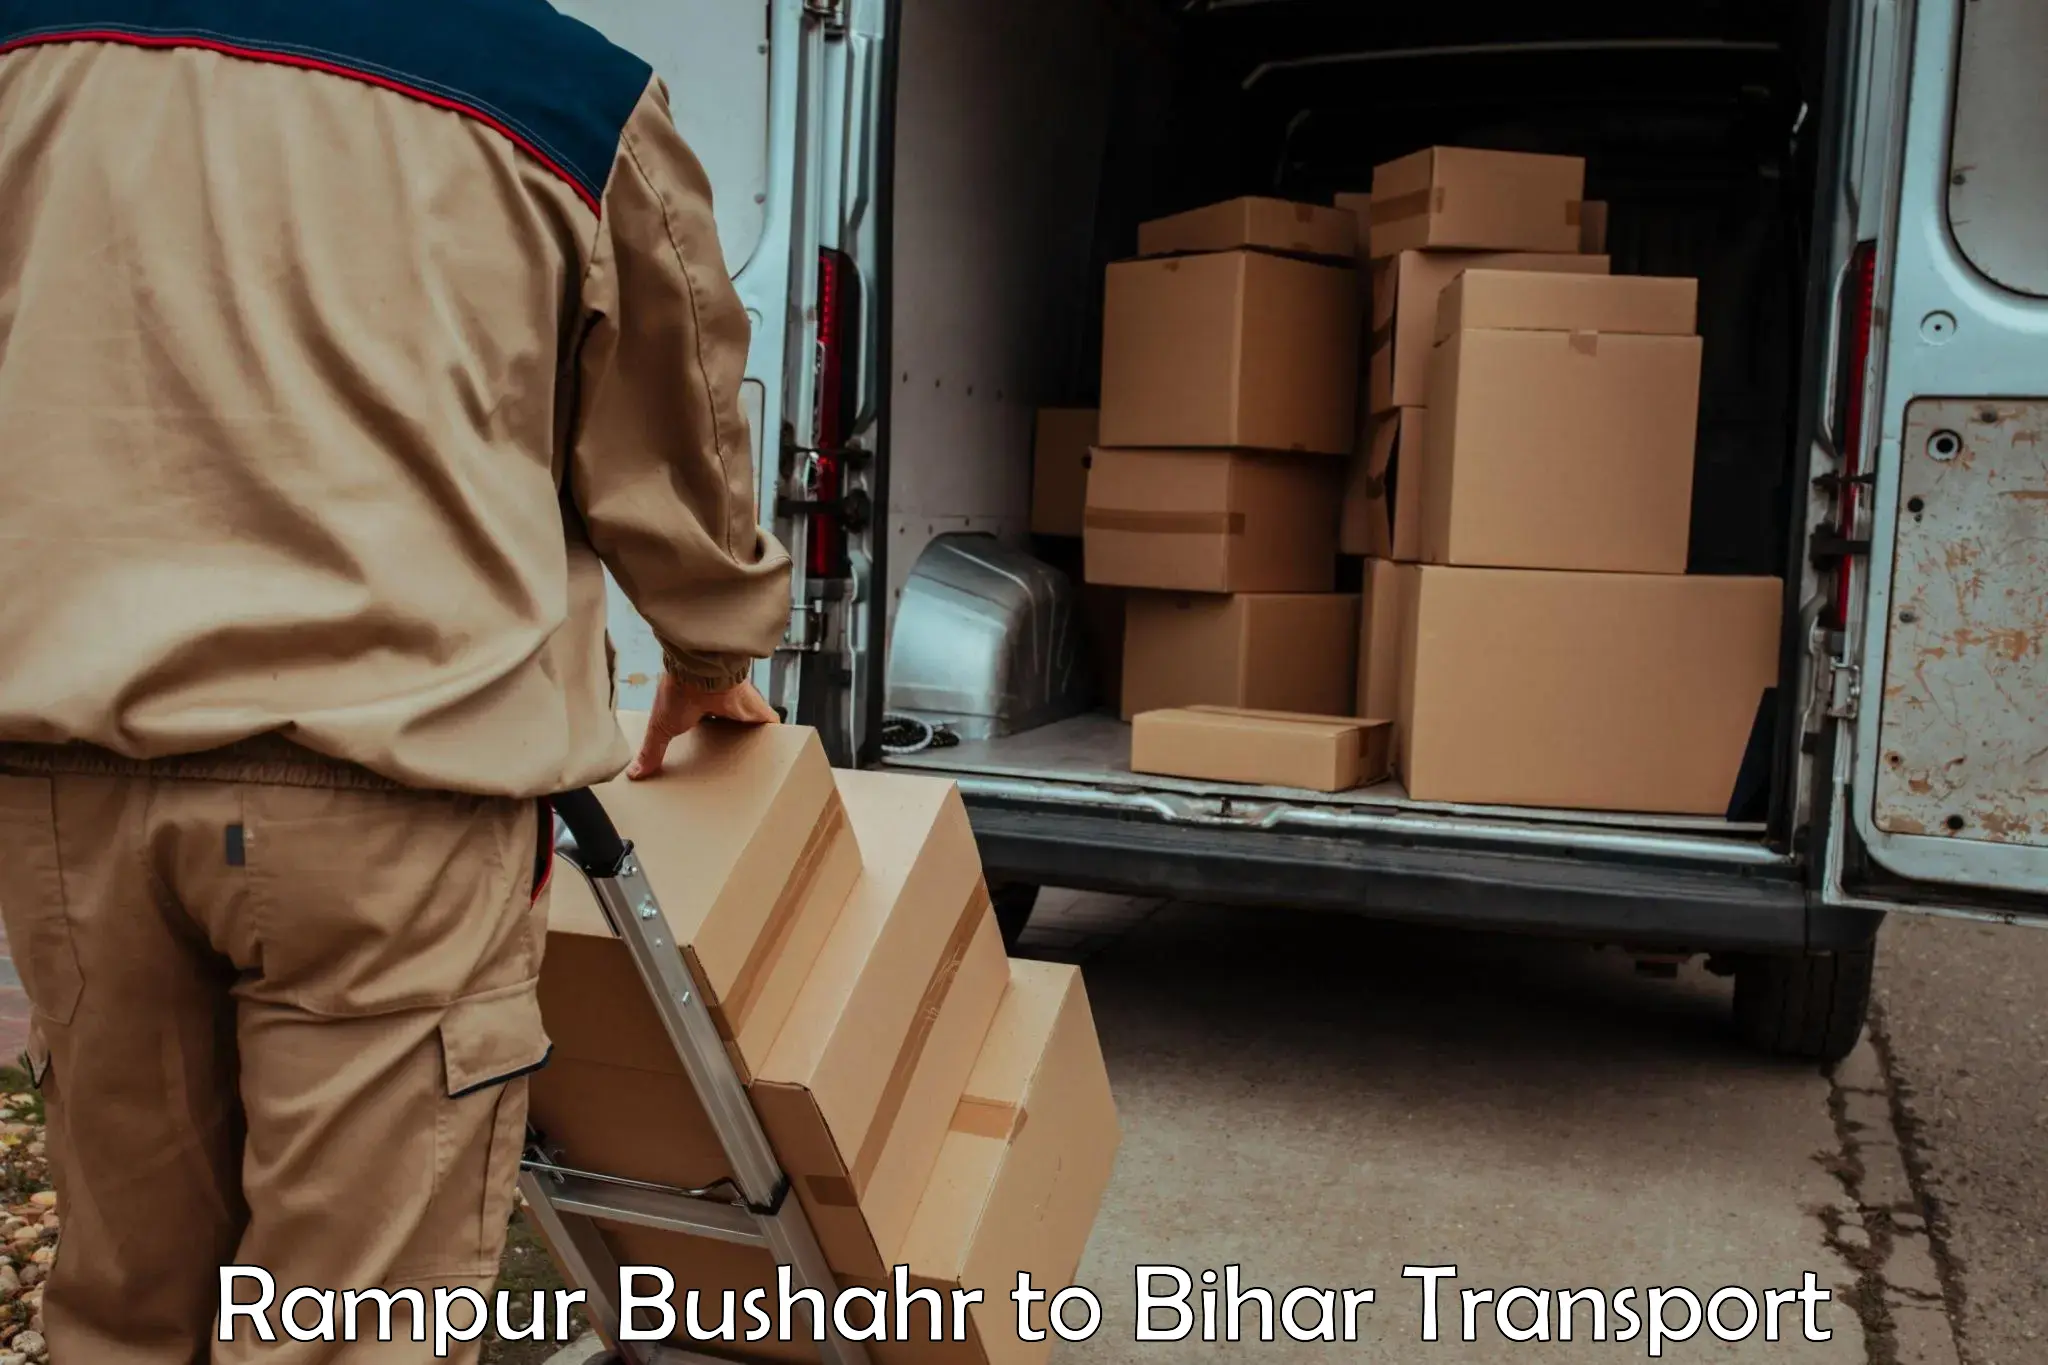 Shipping services Rampur Bushahr to Bettiah